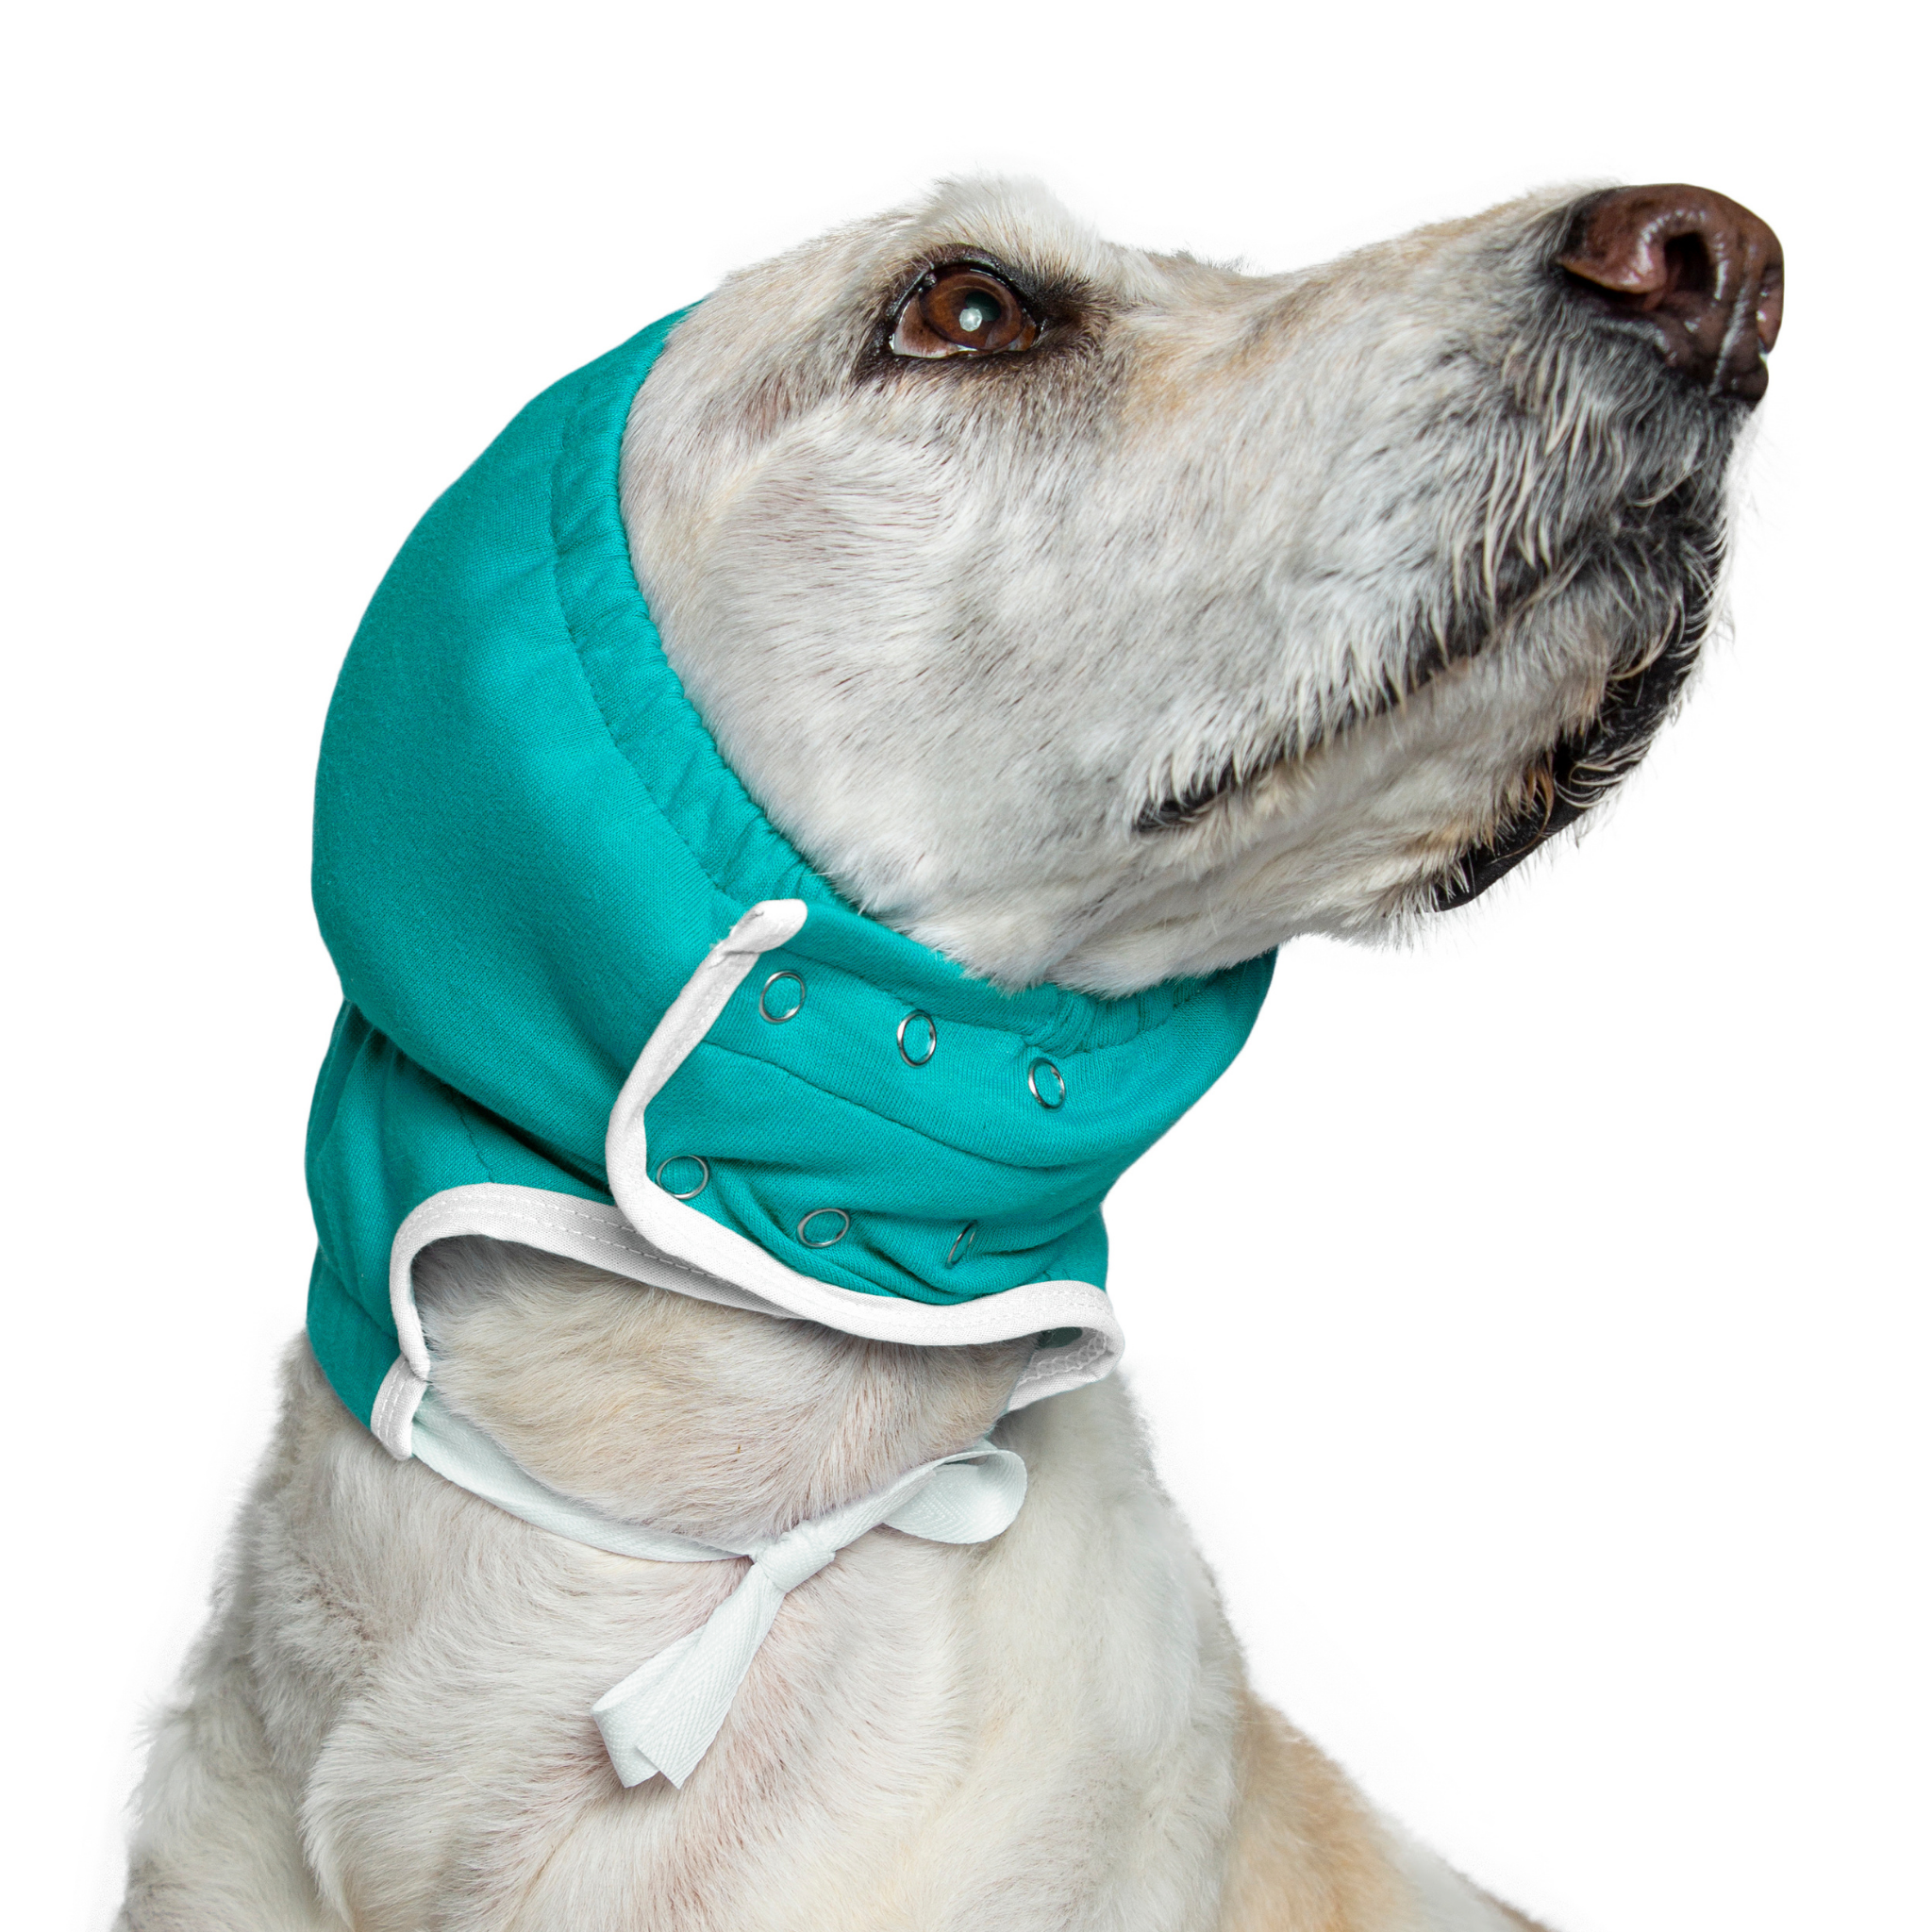 how do you treat dog ear hematoma